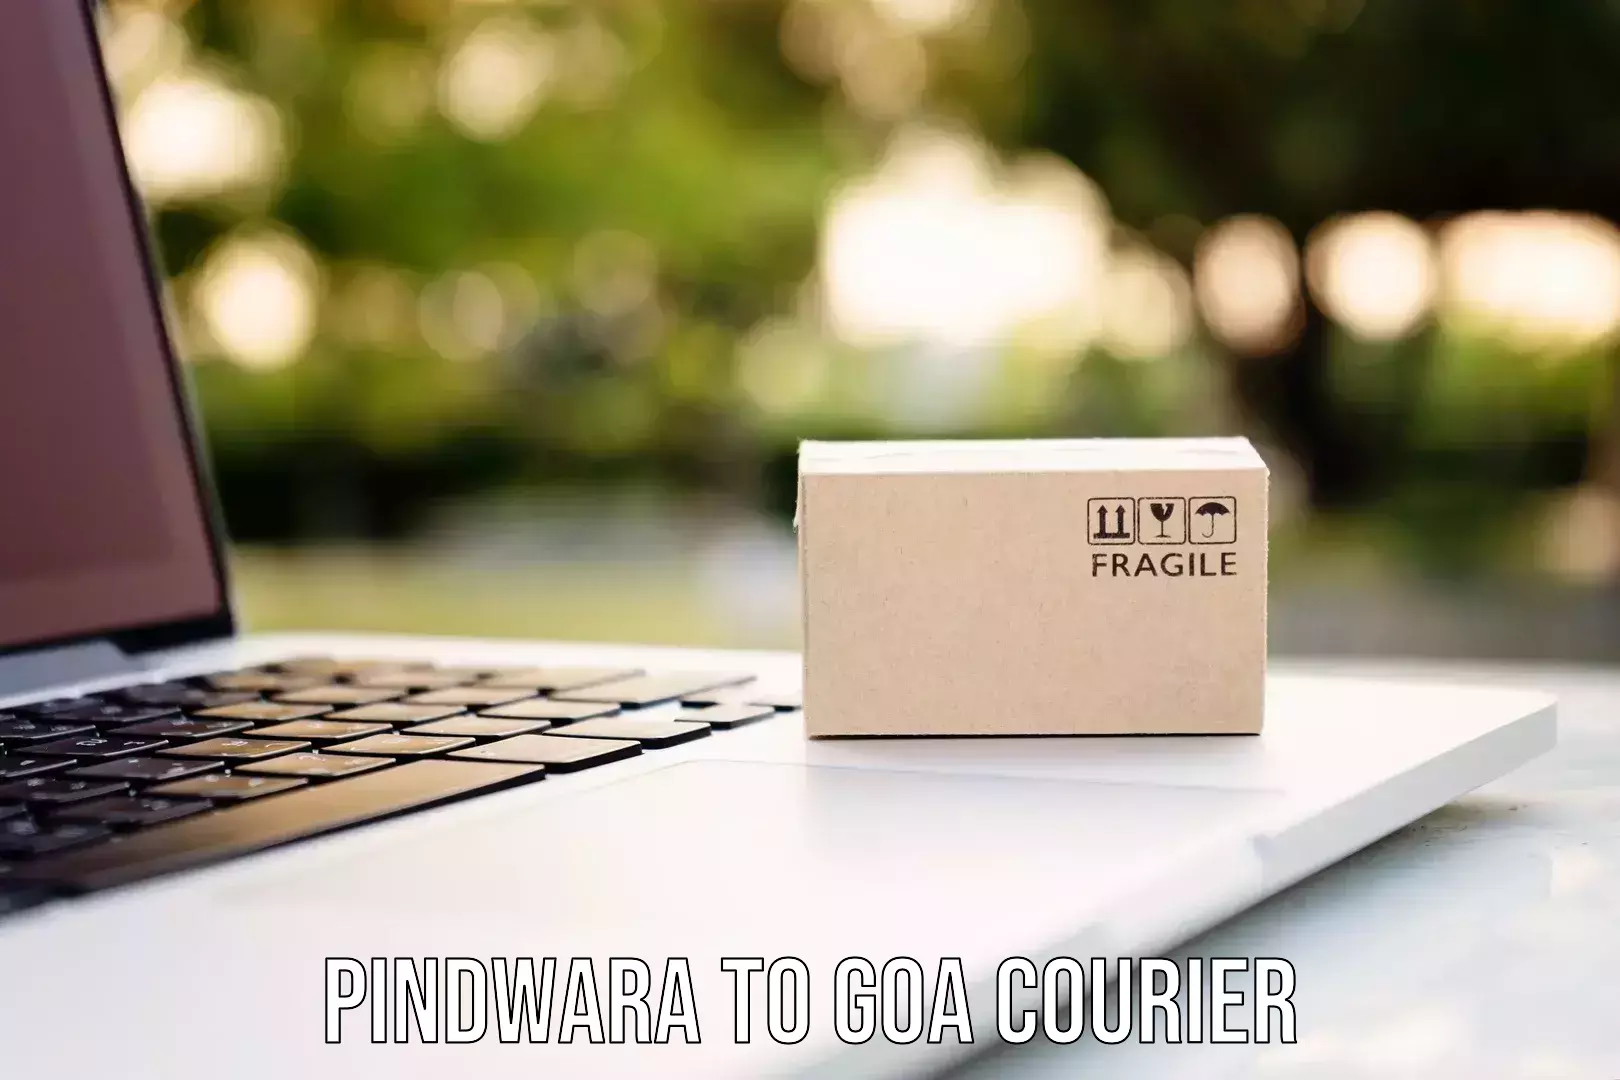 Large package courier Pindwara to Ponda